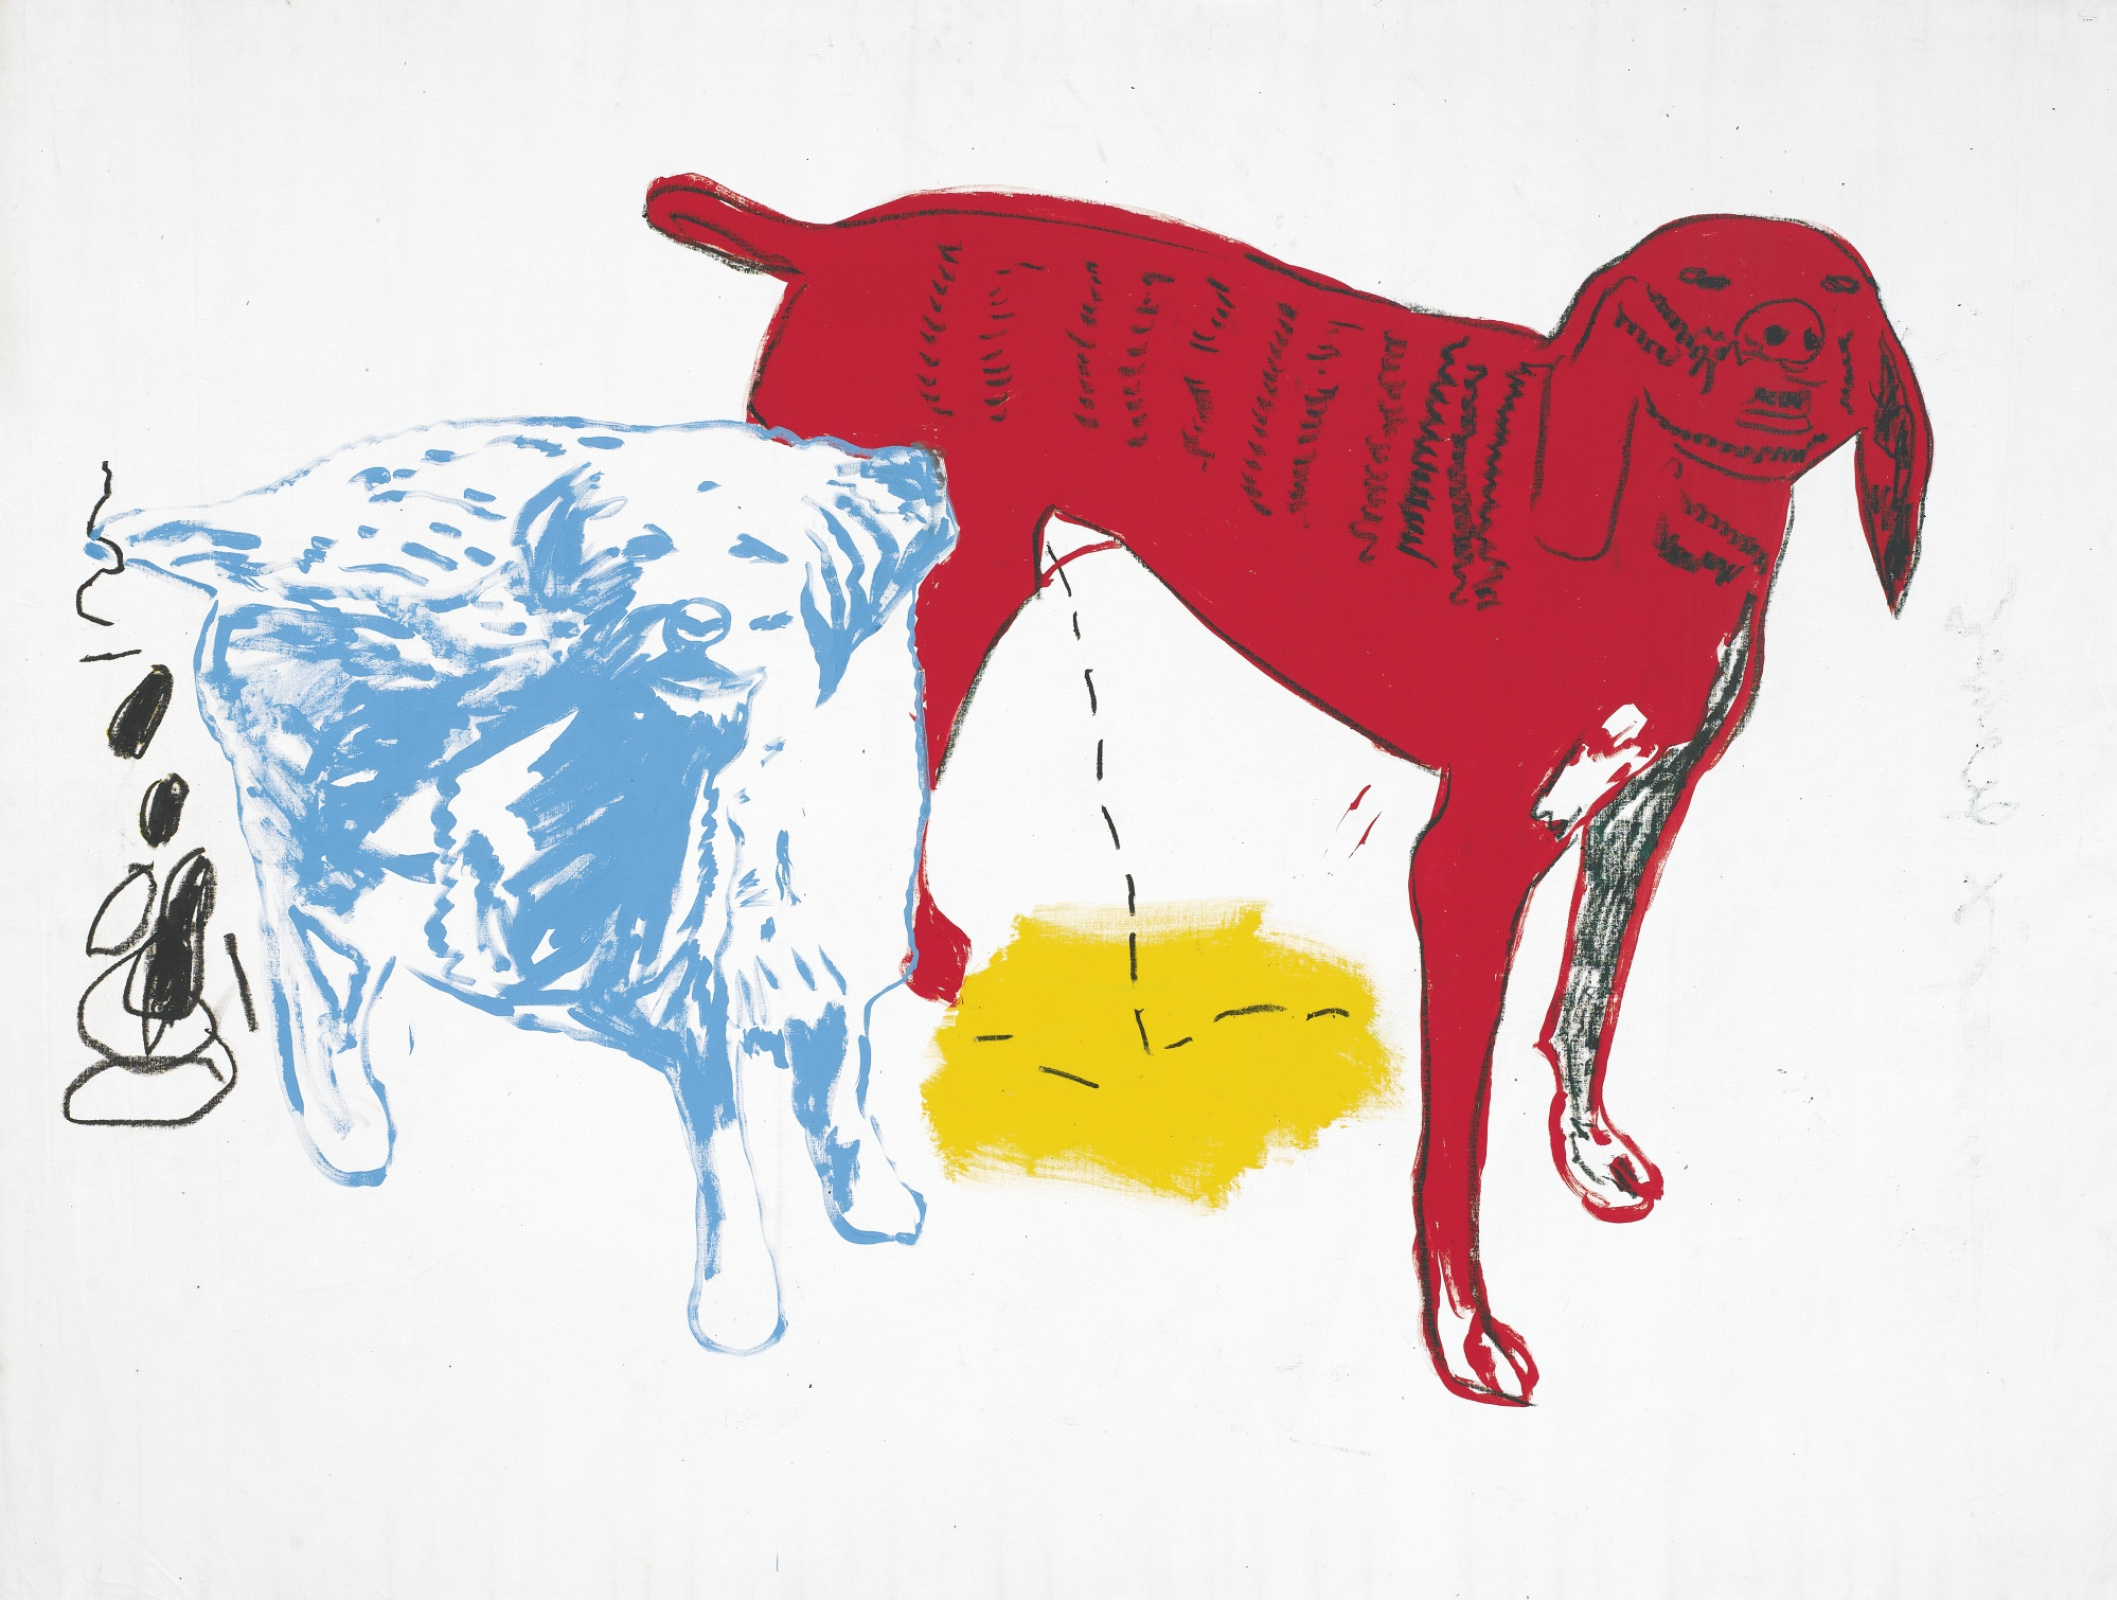 Two dogs (Две собаки), 1984. Жан-Мишель Баския (Jean-Michel Basquiat) - американский художник. Неоэкспрессионизм